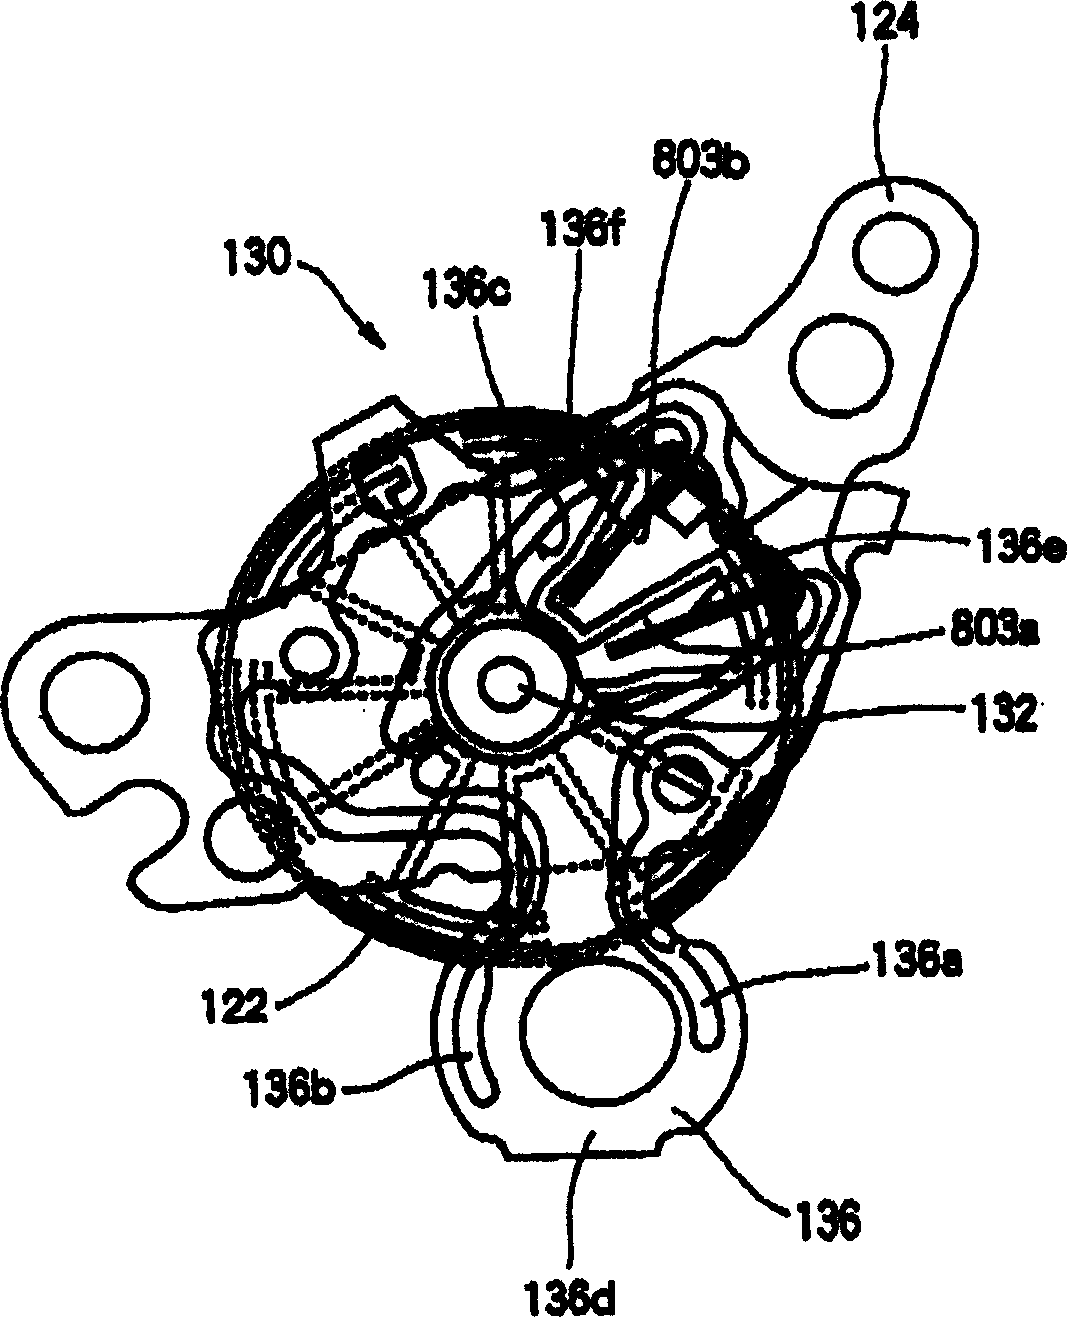 Ultrasonic motor, and electronic timepiece having ultrasonic motor